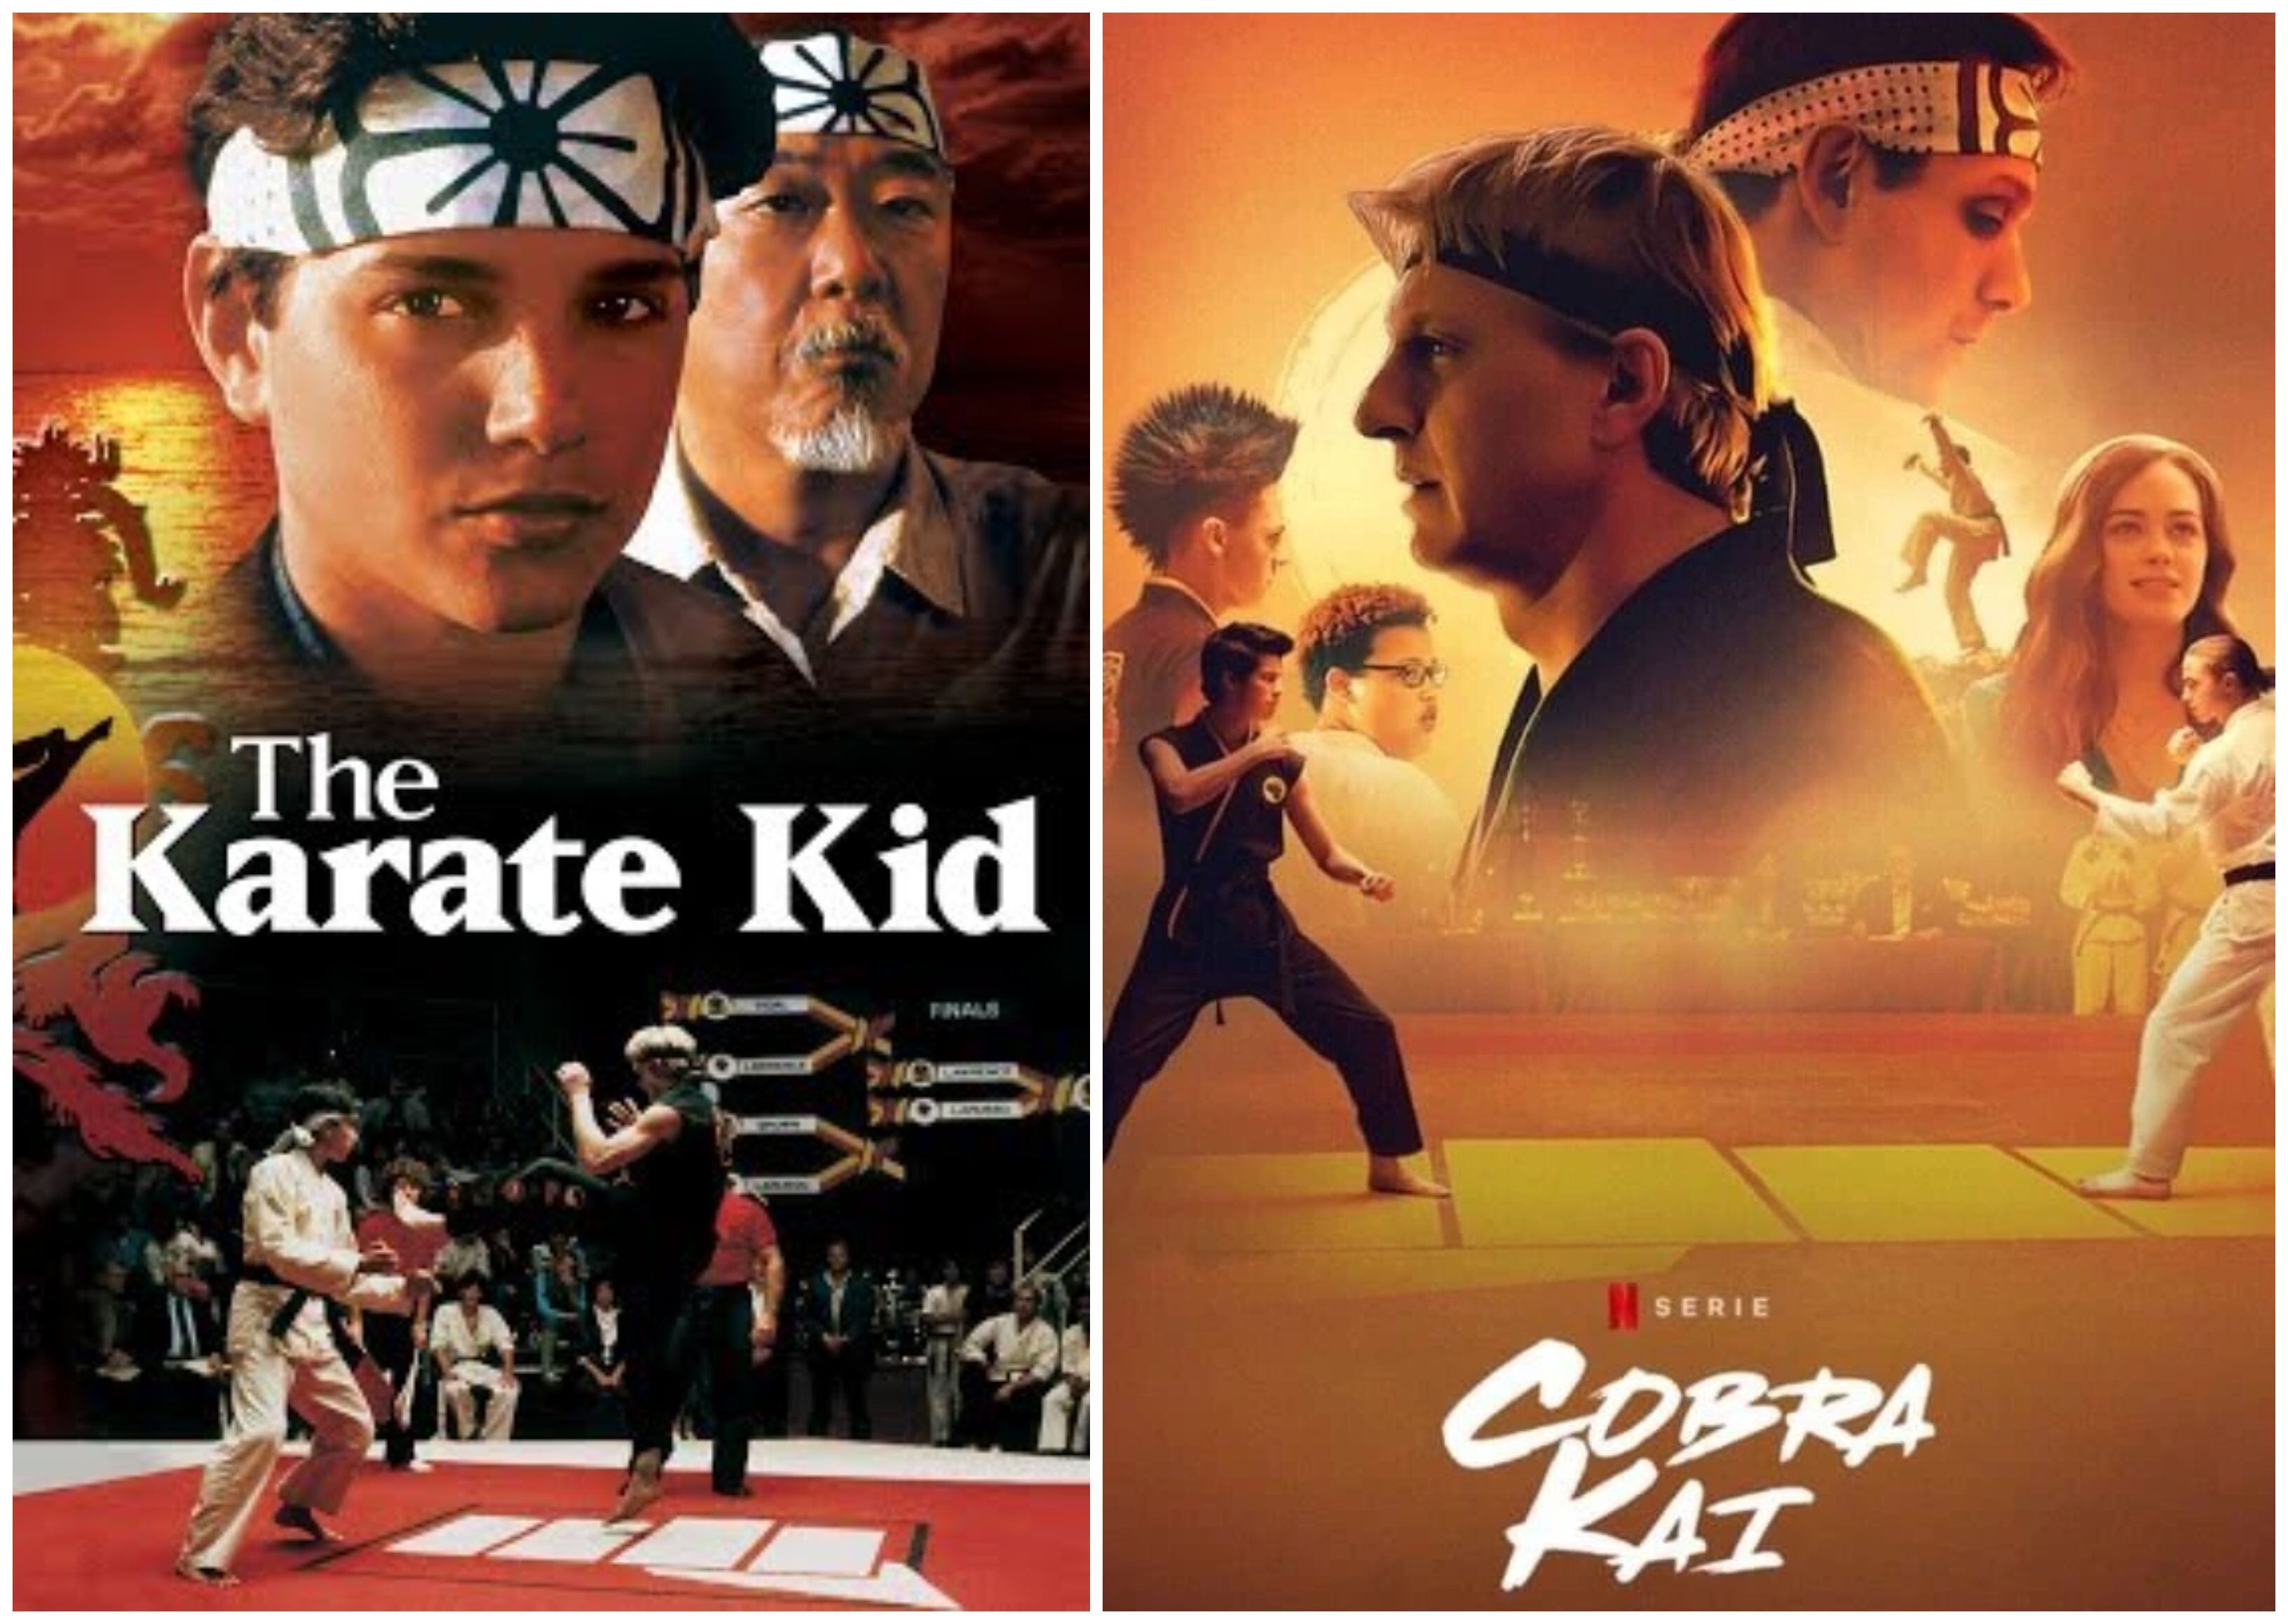 Cobra Kai' de Netflix trae a otro personaje de Karate Kid para la temporada  4, Televisión, Entretenimiento